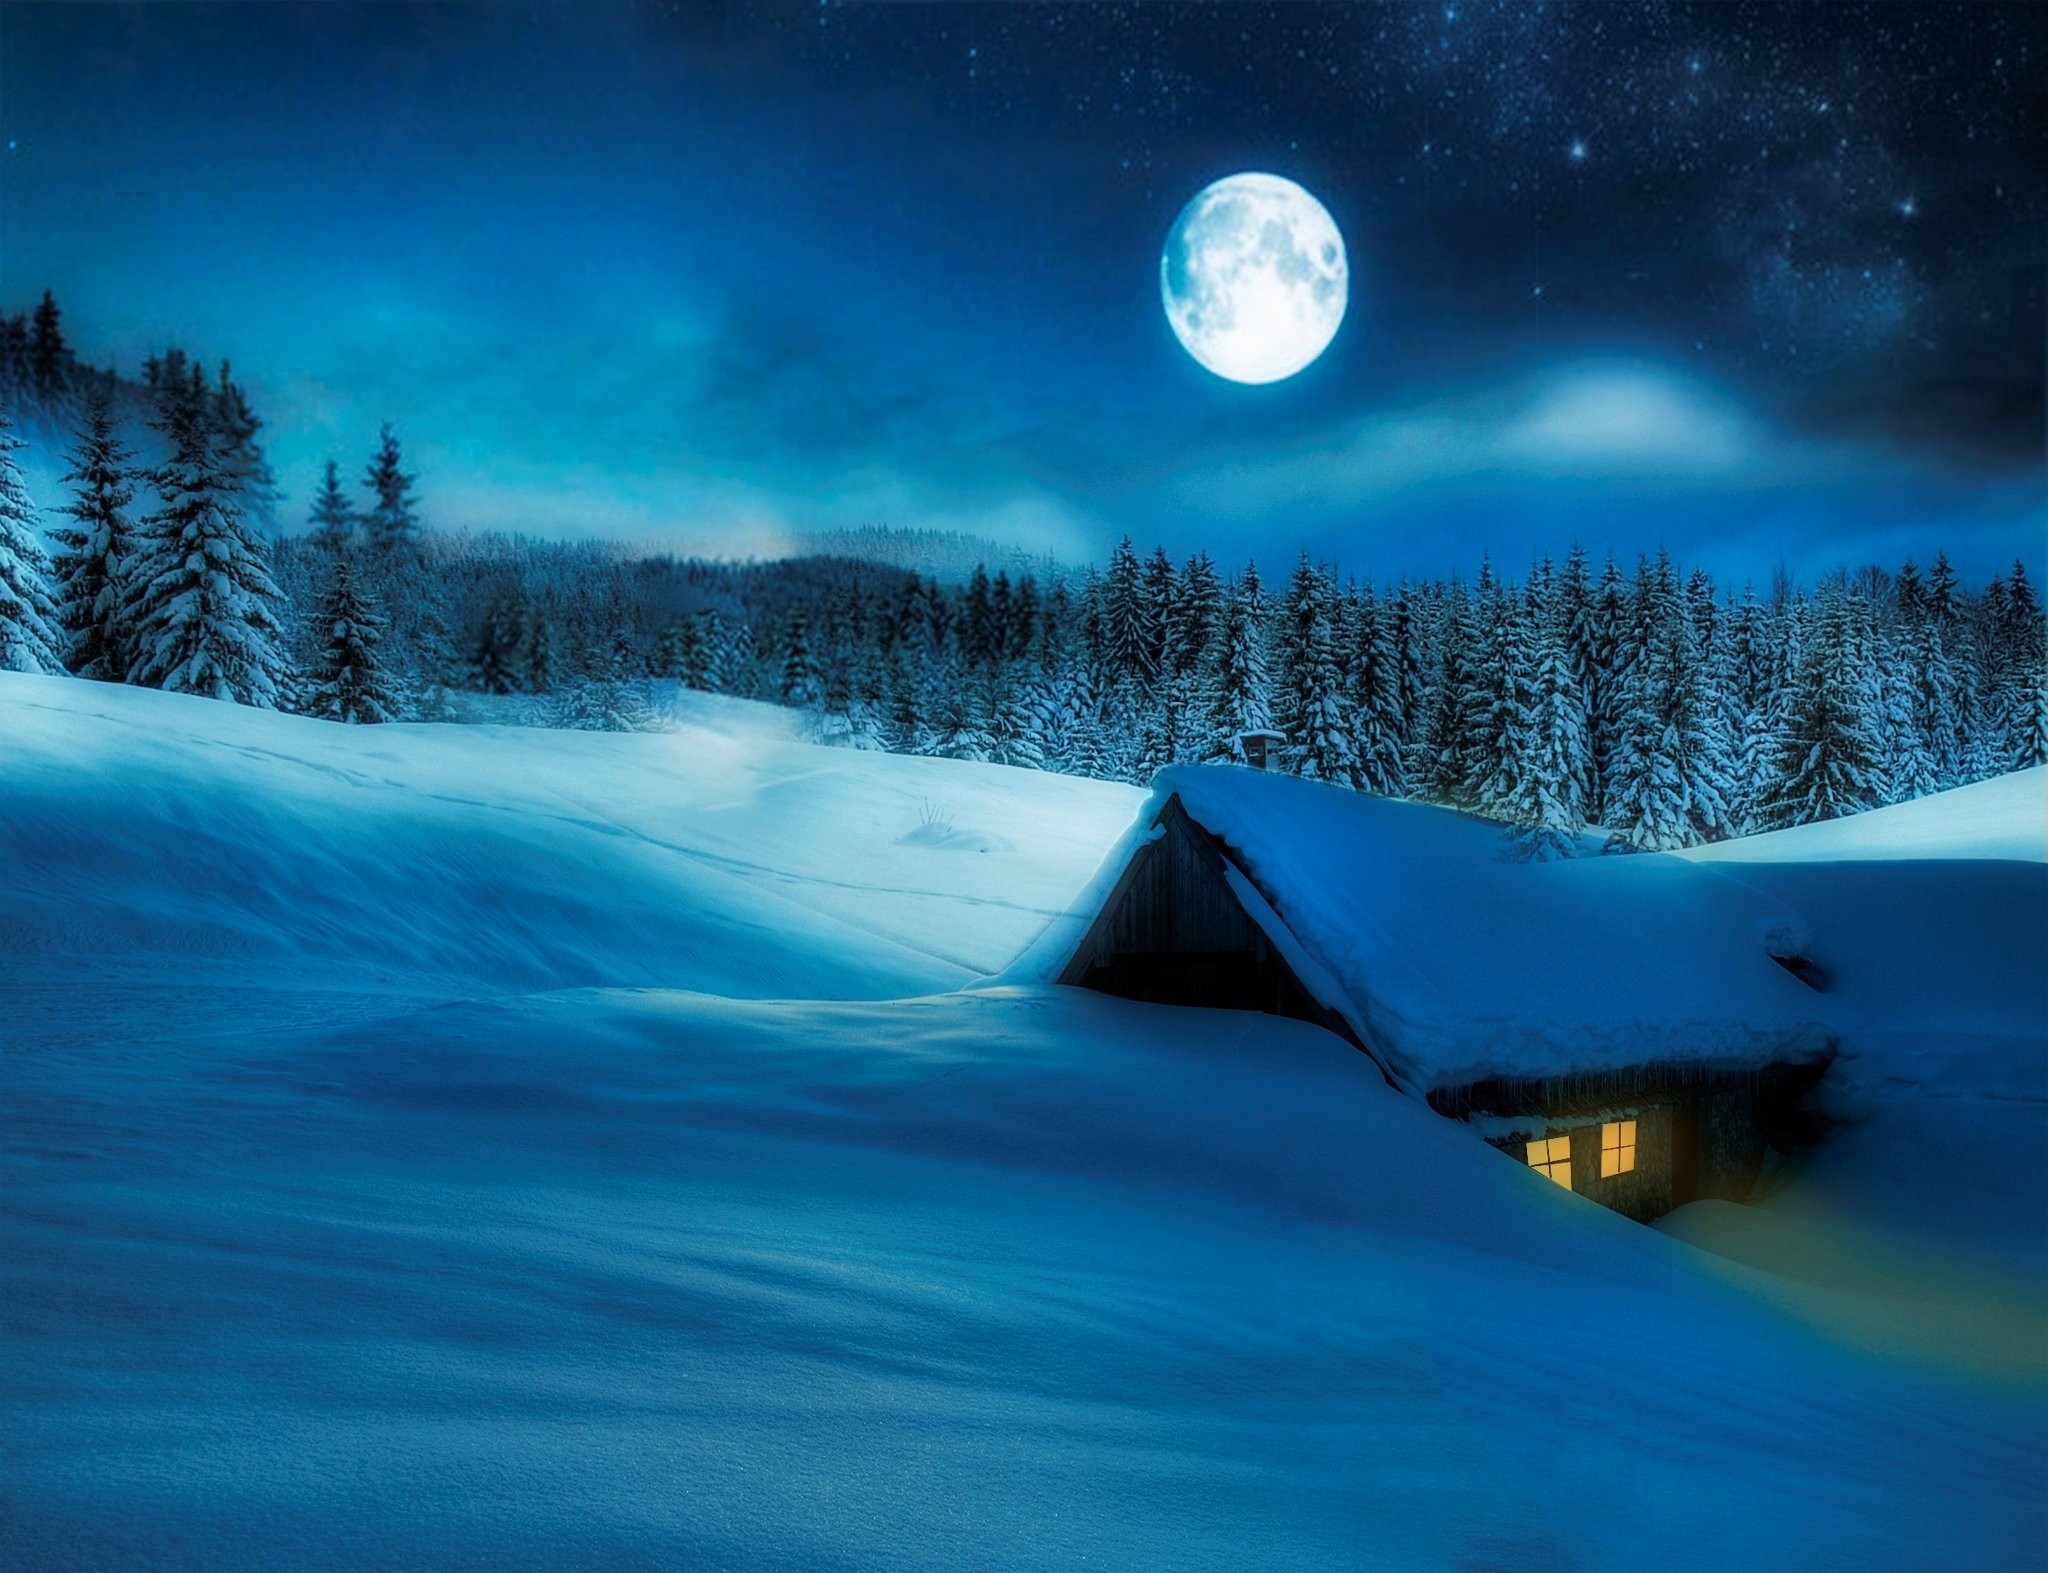 Winter: Night Winter Snow Moon Scene Landscape Desktop Wallpaper for ...